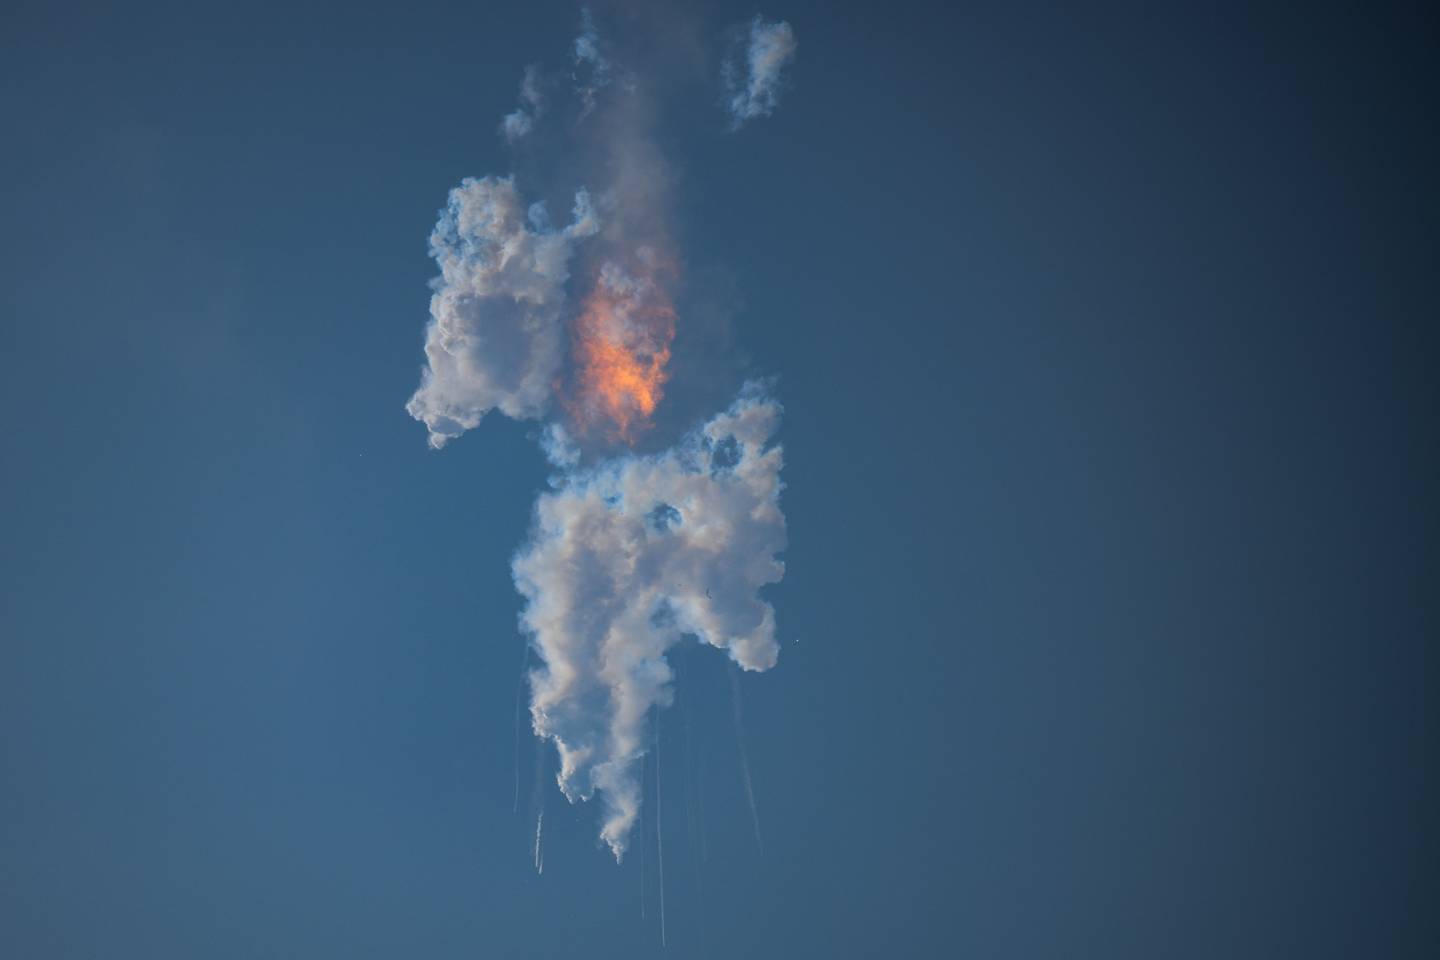 La nave estelar de SpaceX explota tras su lanzamiento para una prueba de vuelo desde la base estelar de Boca Chica, Texas, el 20 de abril de 2023. Fotógrafo: Patrick T. Fallon/AFP/Getty Images